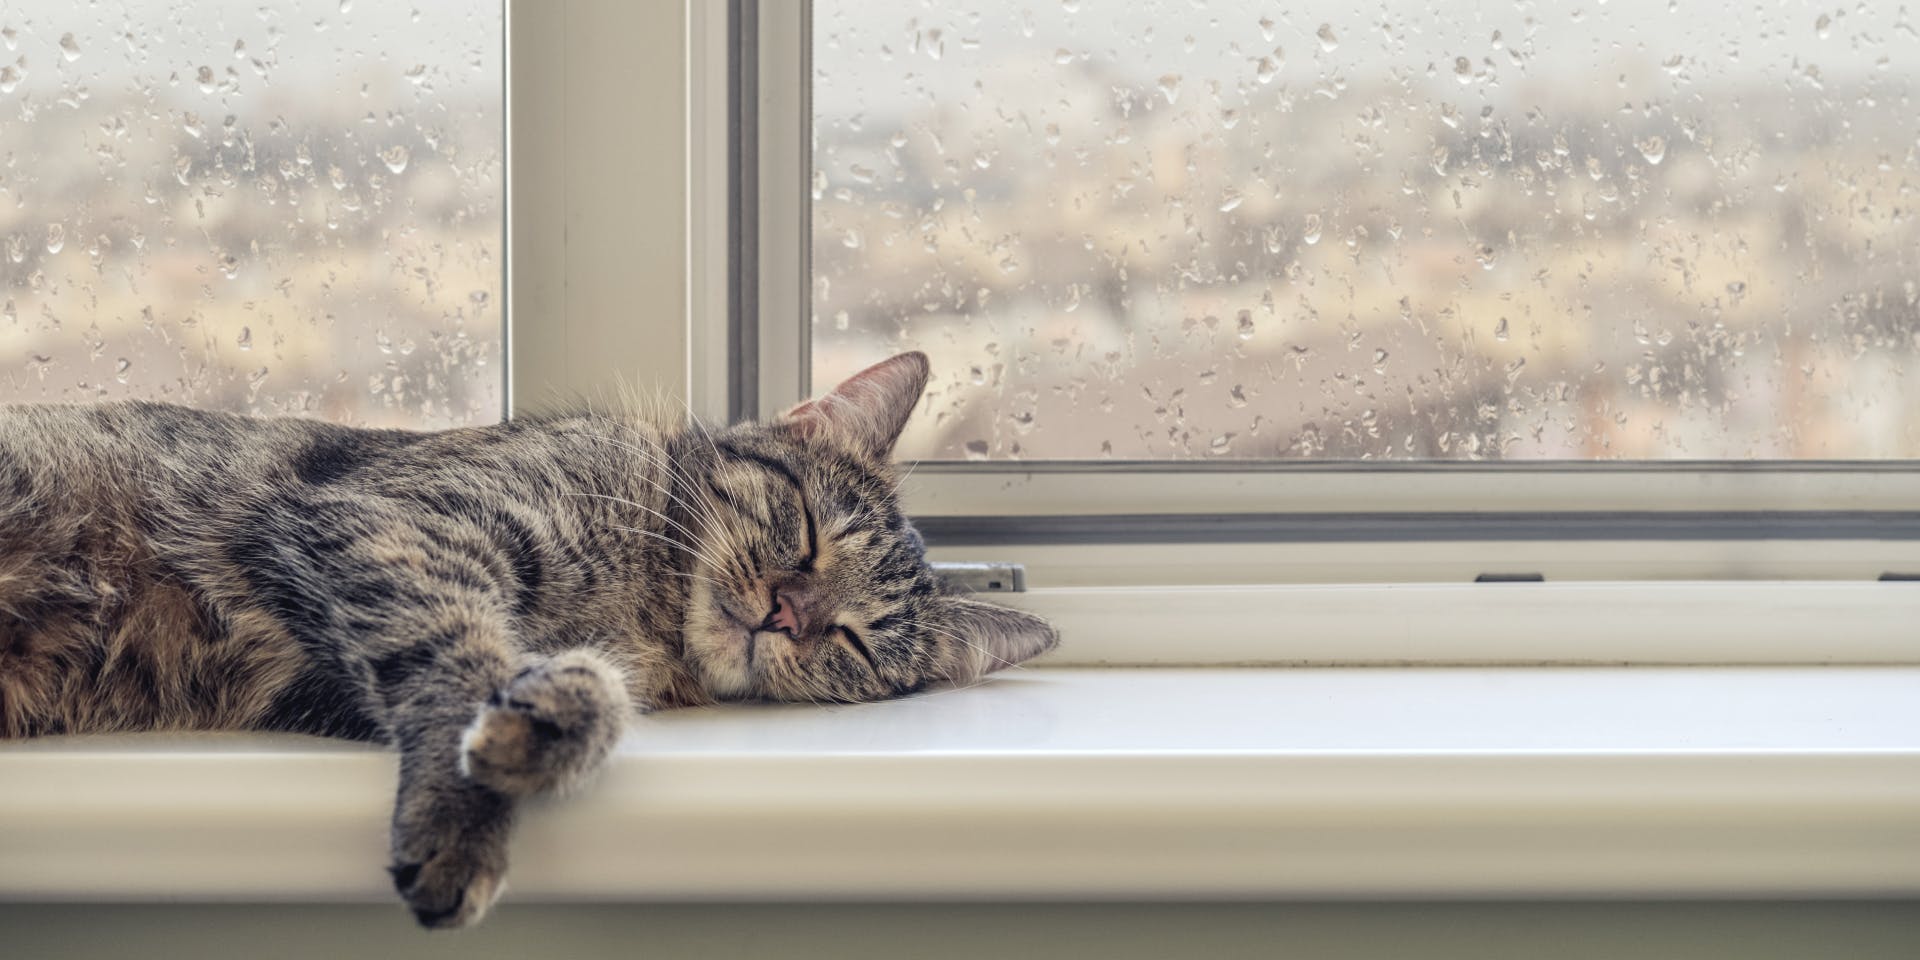 A gray tabby asleep on a window ledge.